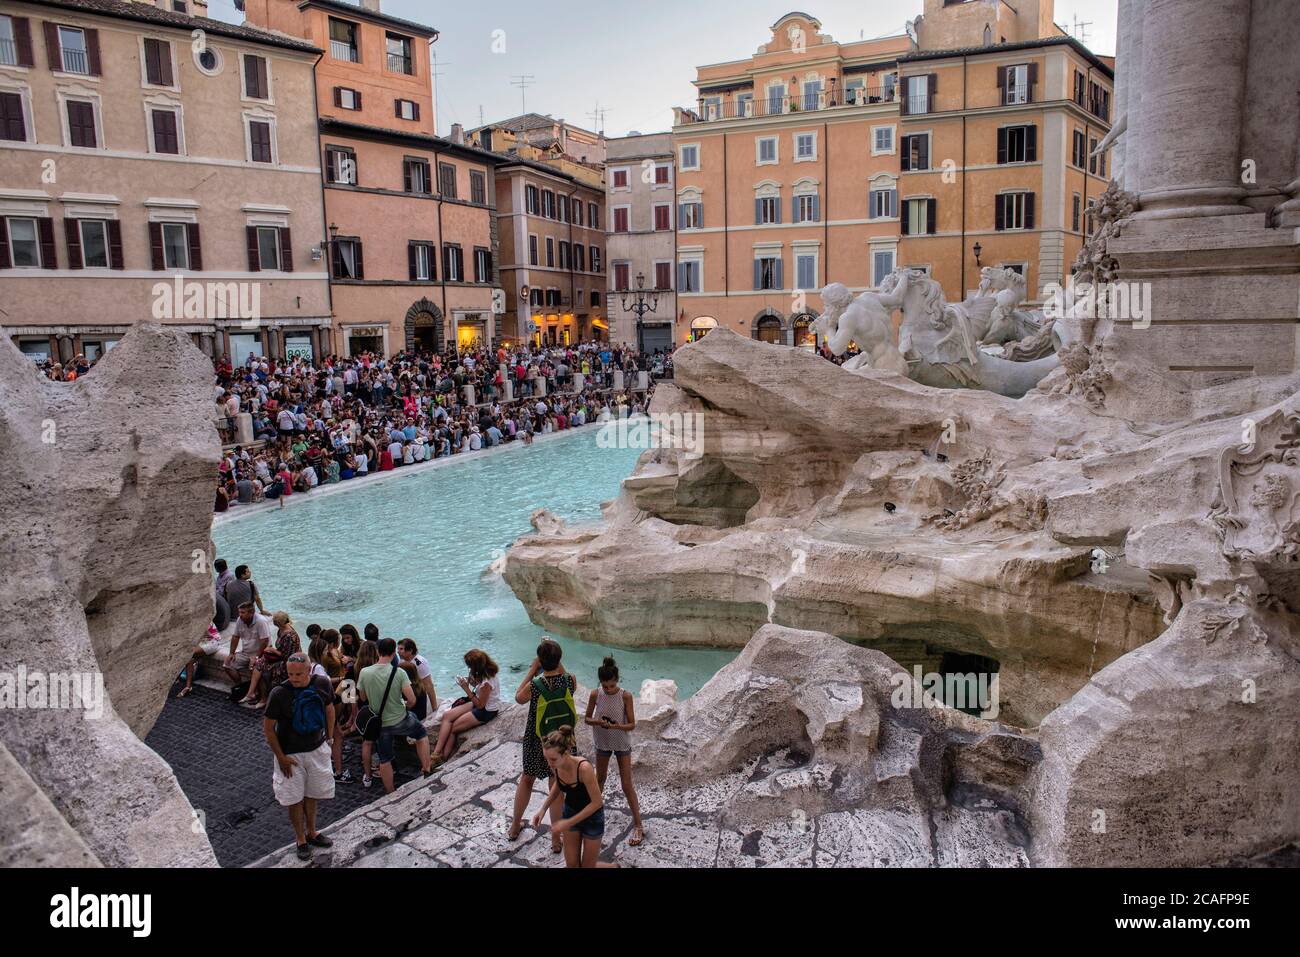 Europa - Italia, capital Roma: Turista en la Fontana de Trevi, que es uno de los lugares más populares de Roma, miles de personas visitan el foundtai Foto de stock